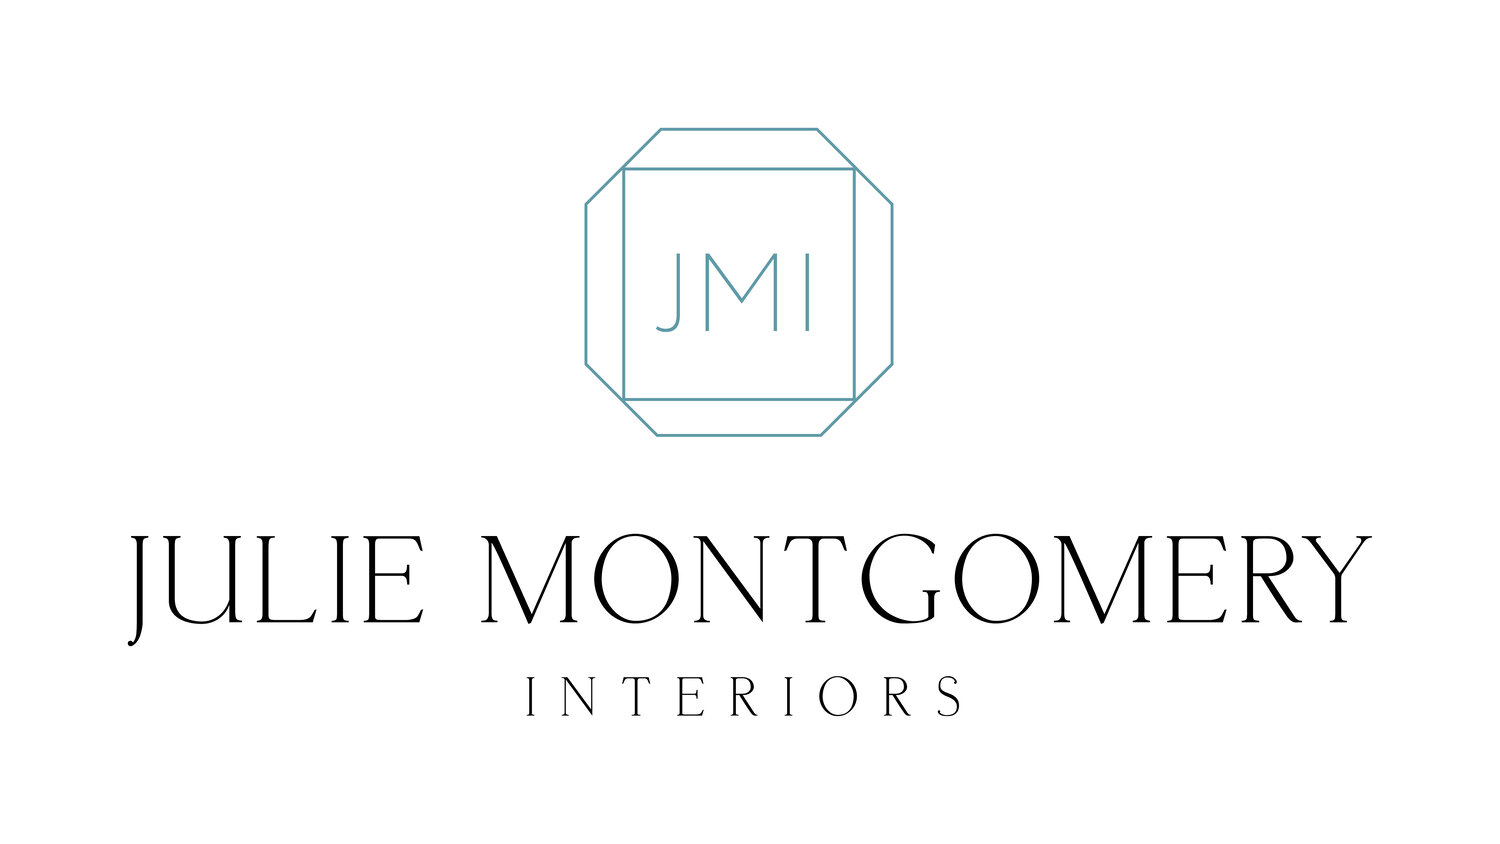 Julie Montgomery Interior Design Services